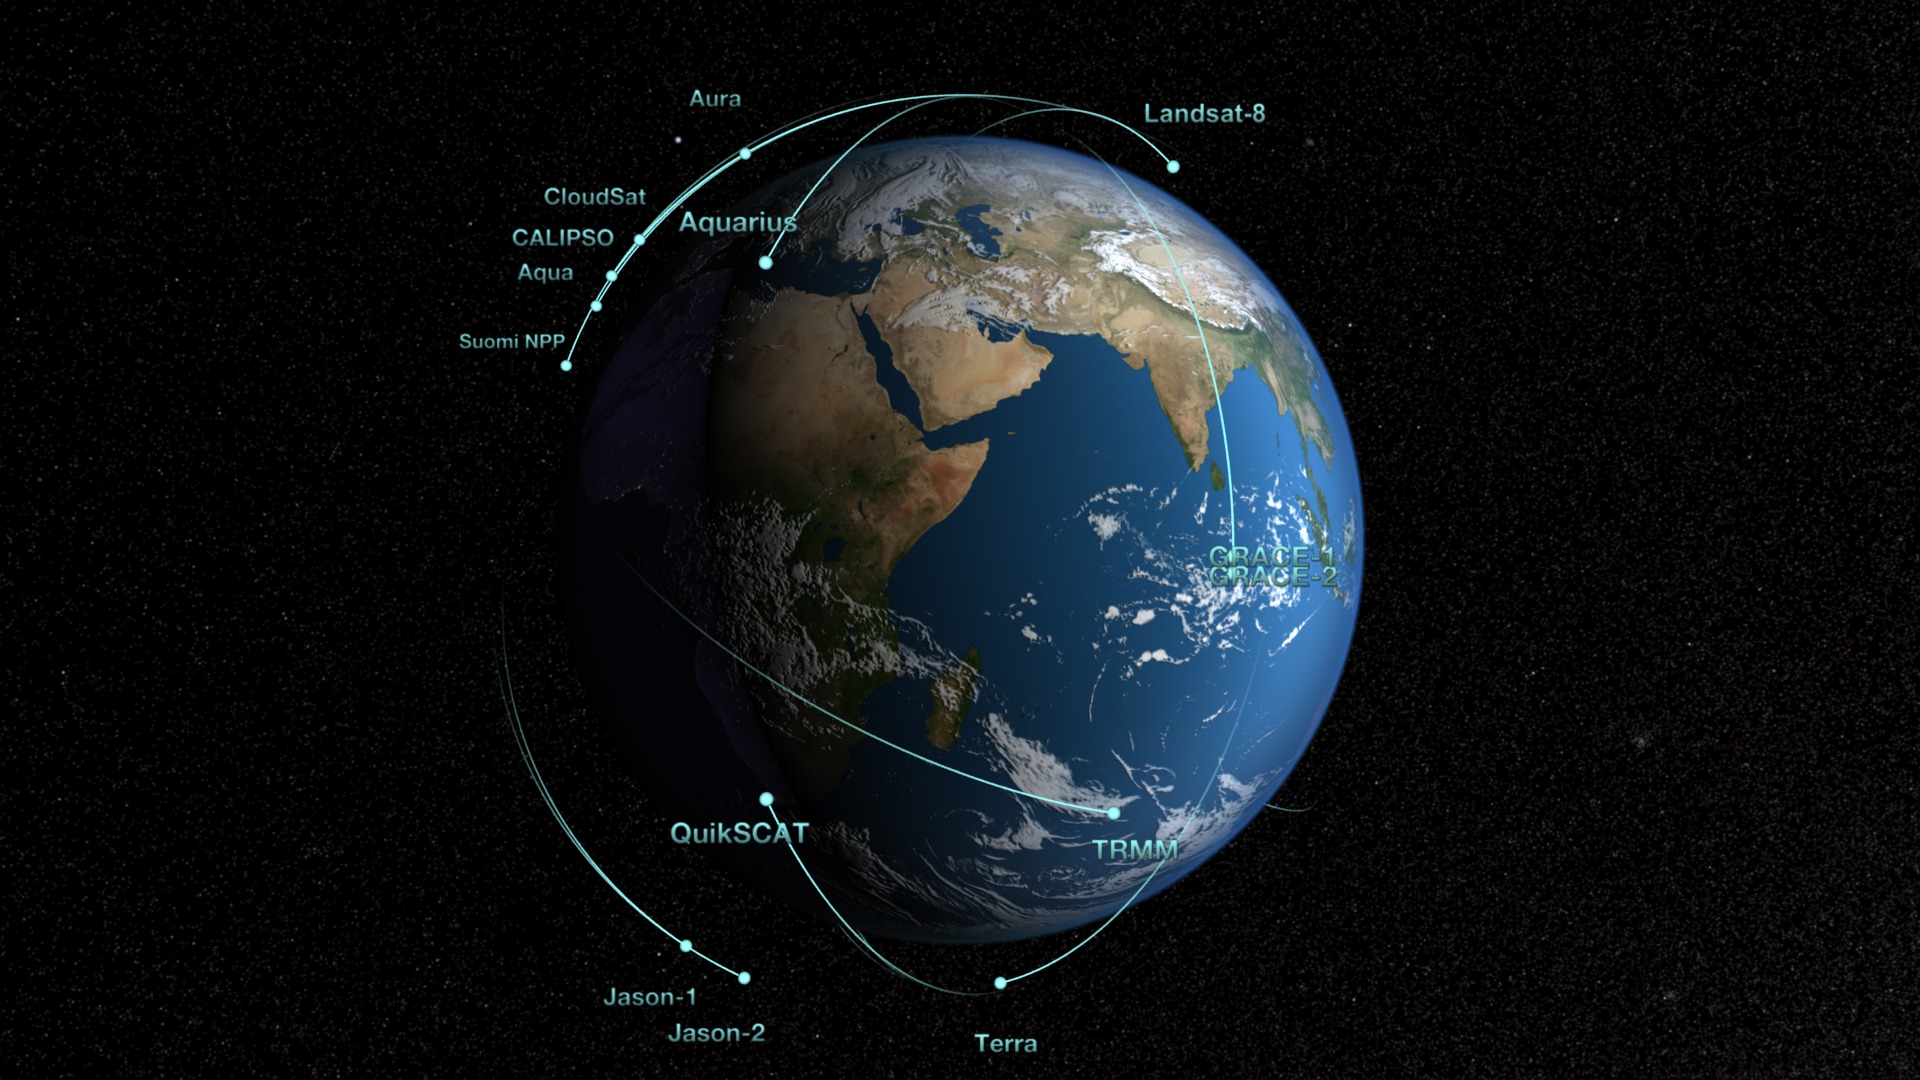 Preview Image for NASA Earth Observing Fleet including Landsat 8